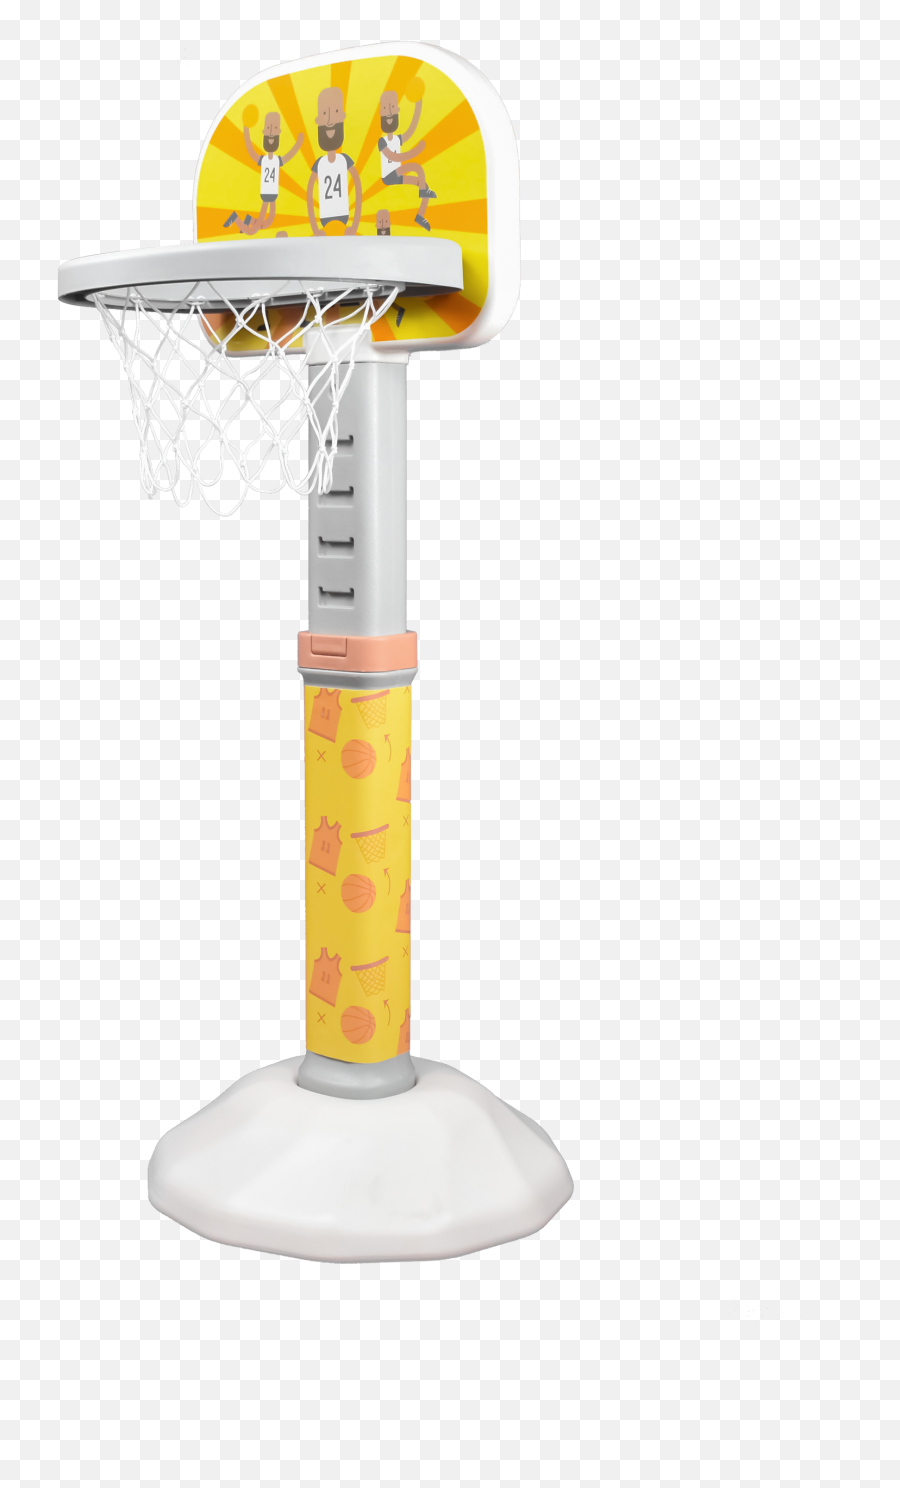 New Adjustable Lion Kids Mini Basketball Hoop Bs34h - Basketball Rim Png,Basketball Hoop Png